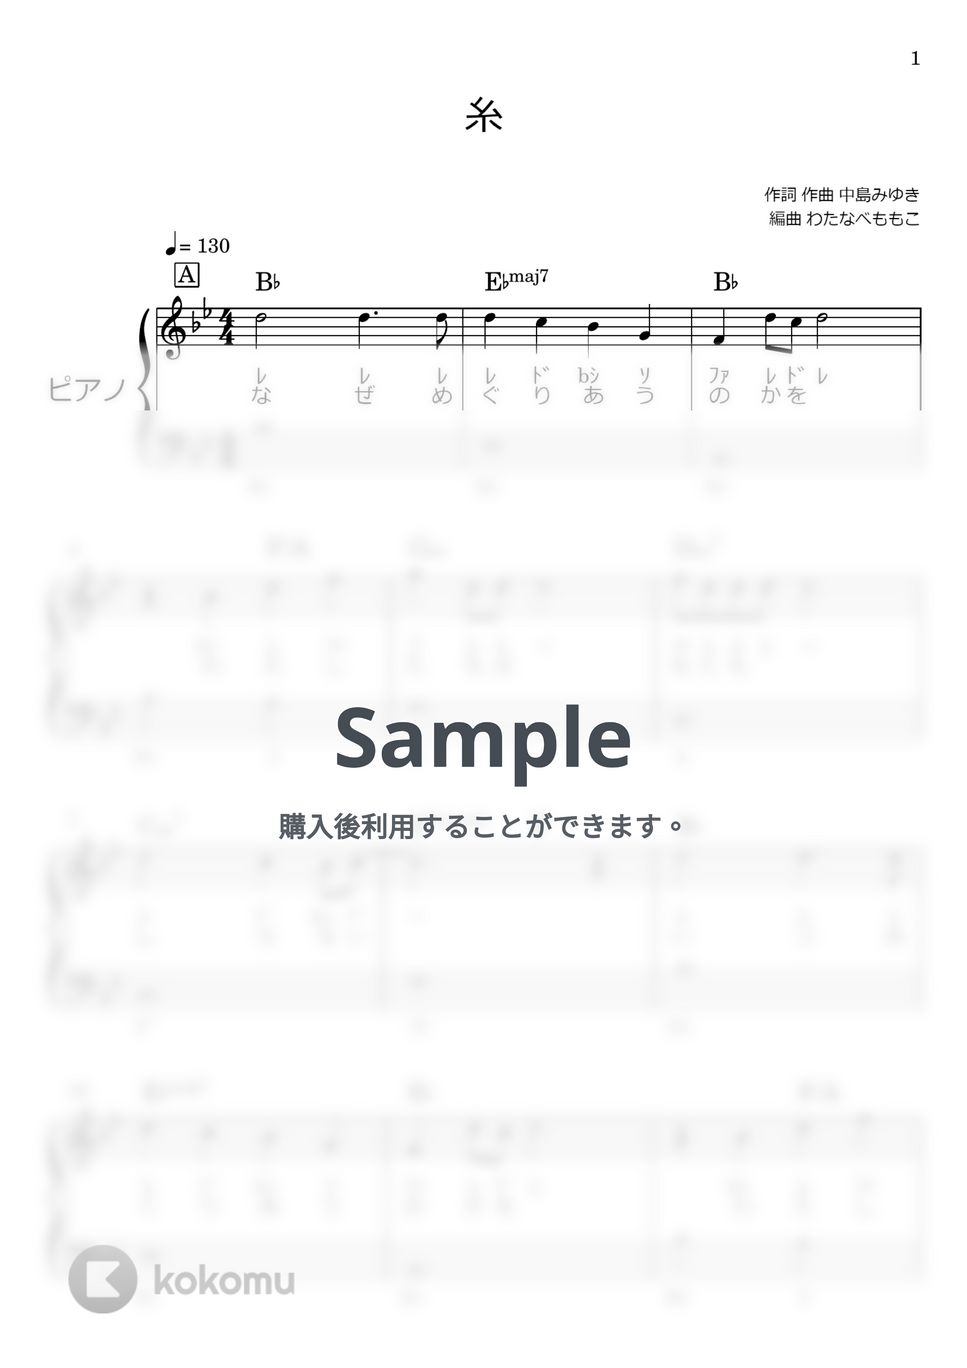 中島みゆき - 糸 (ピアノ初級) by わたなべももこ